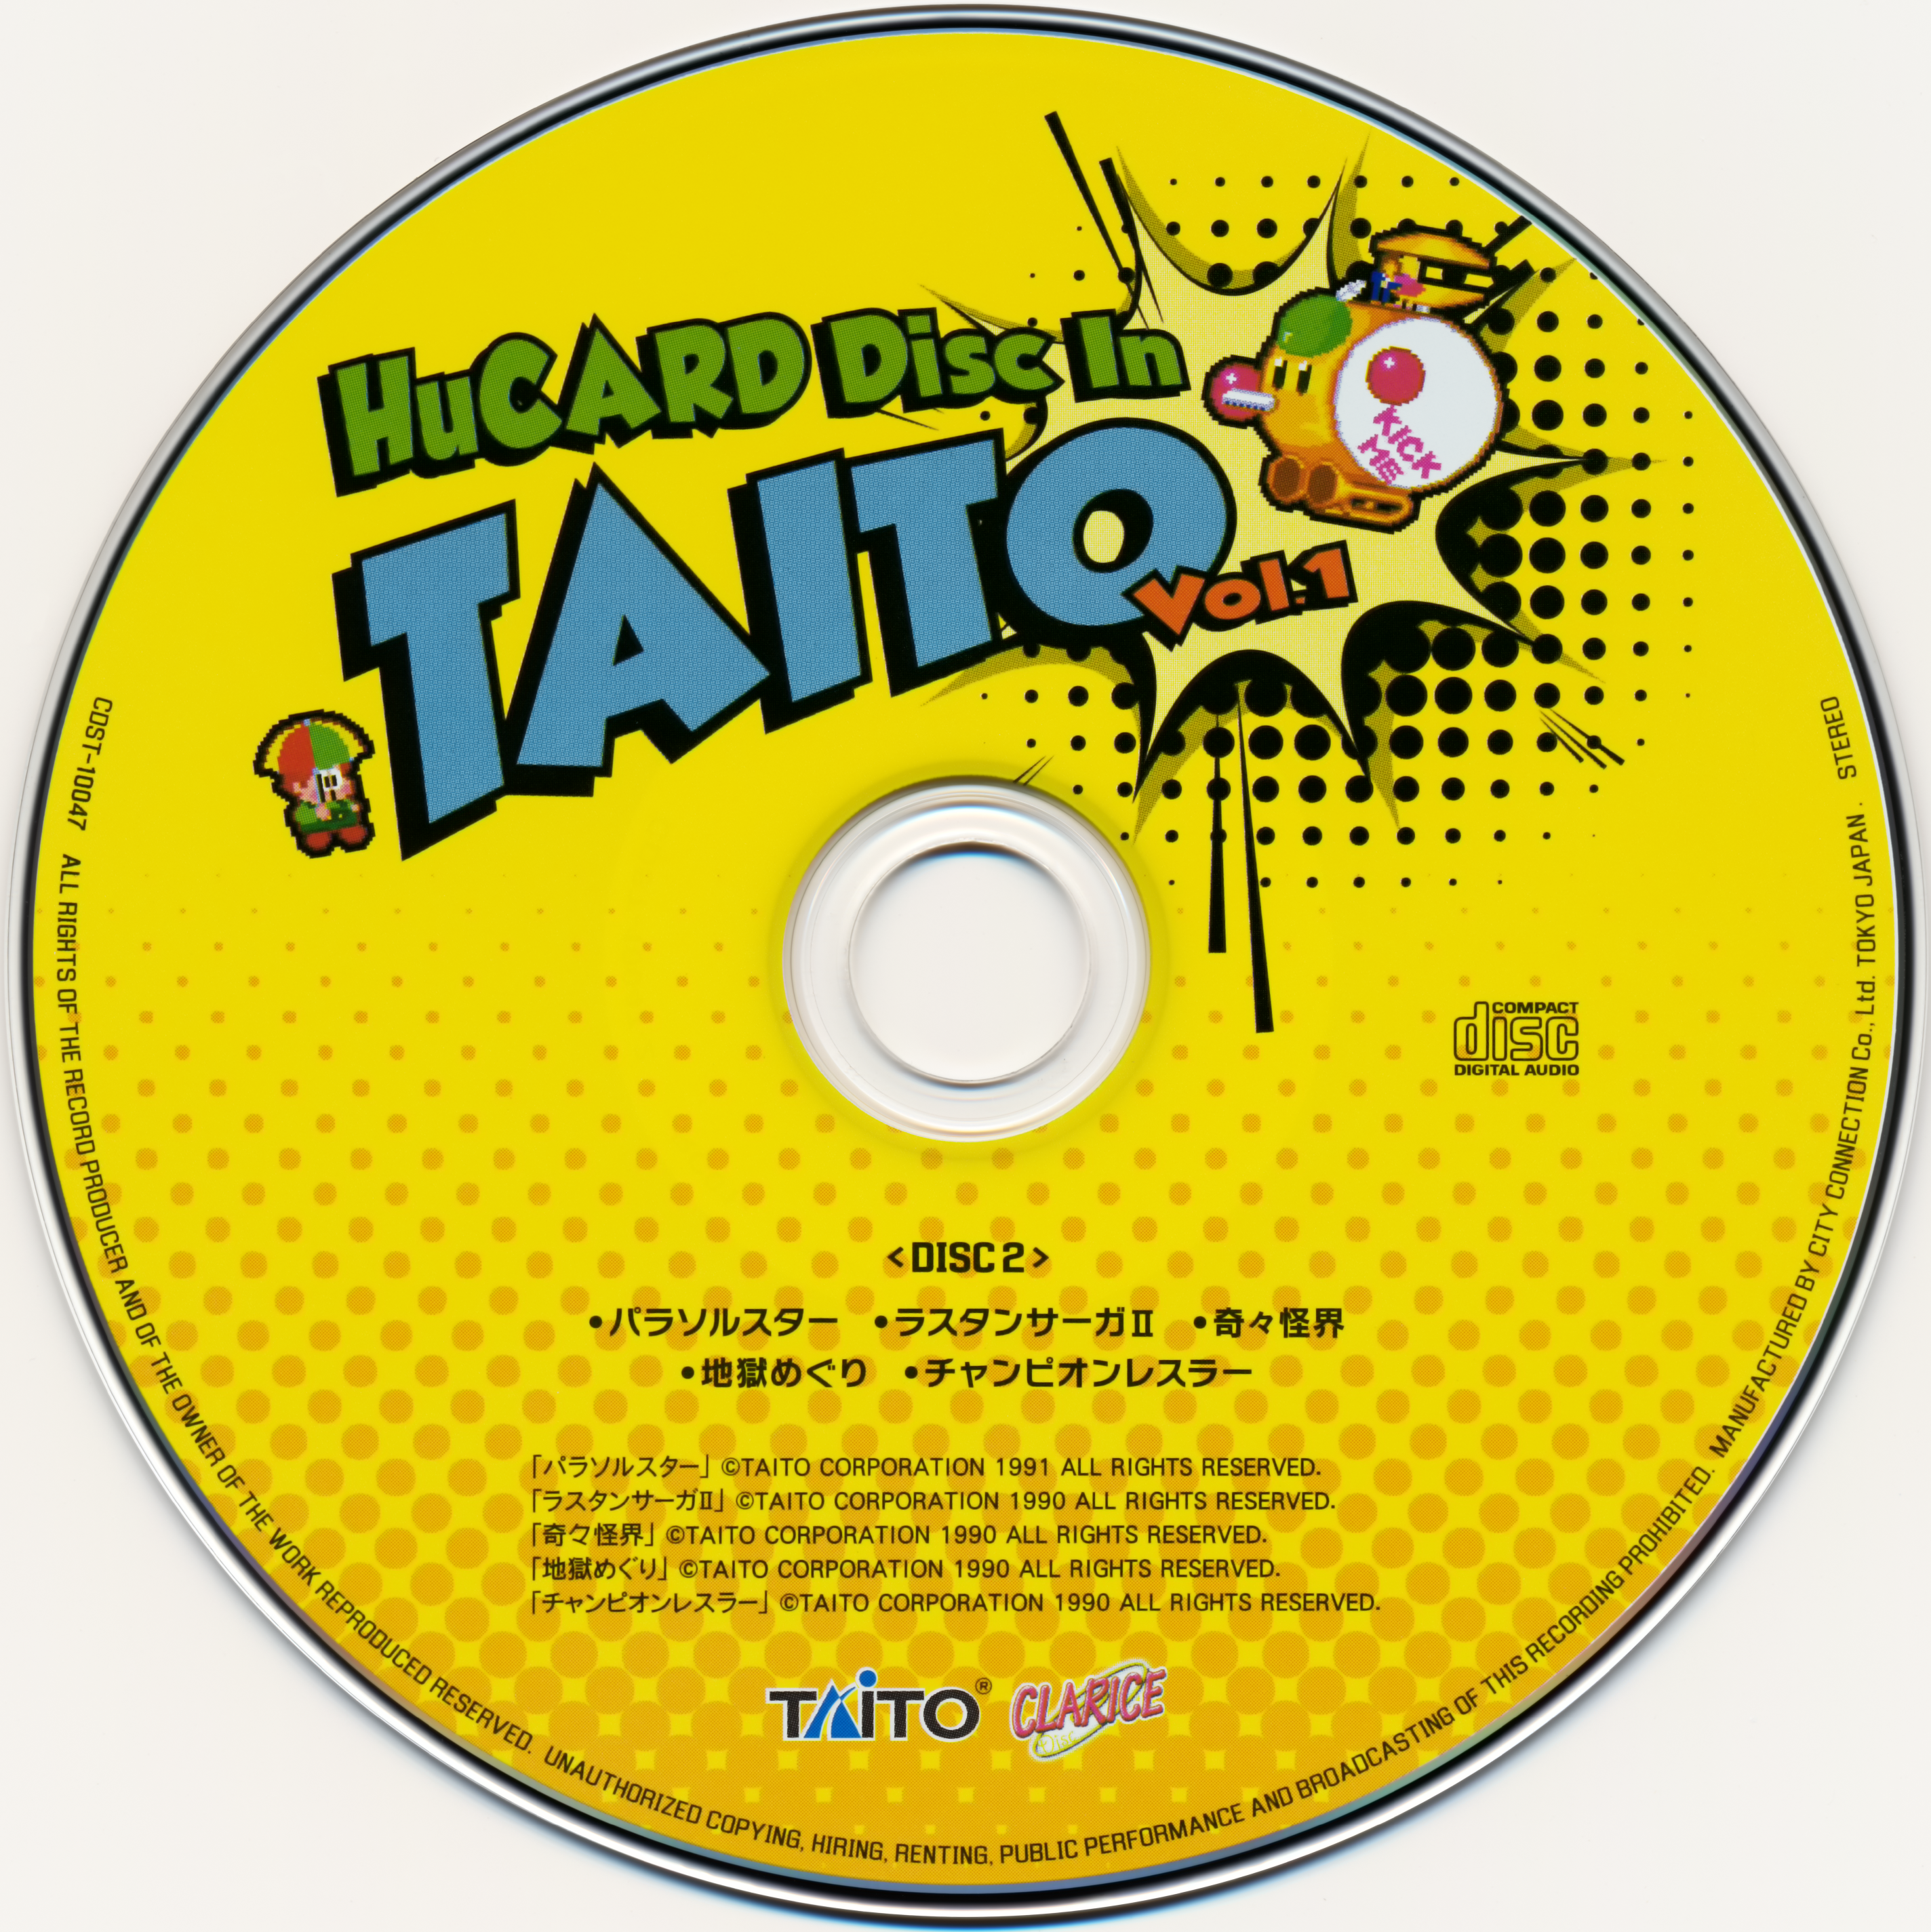 HuCARD Disc In TAITO Vol. 1 MP3 - Download HuCARD Disc In TAITO Vol. 1  Soundtracks for FREE!